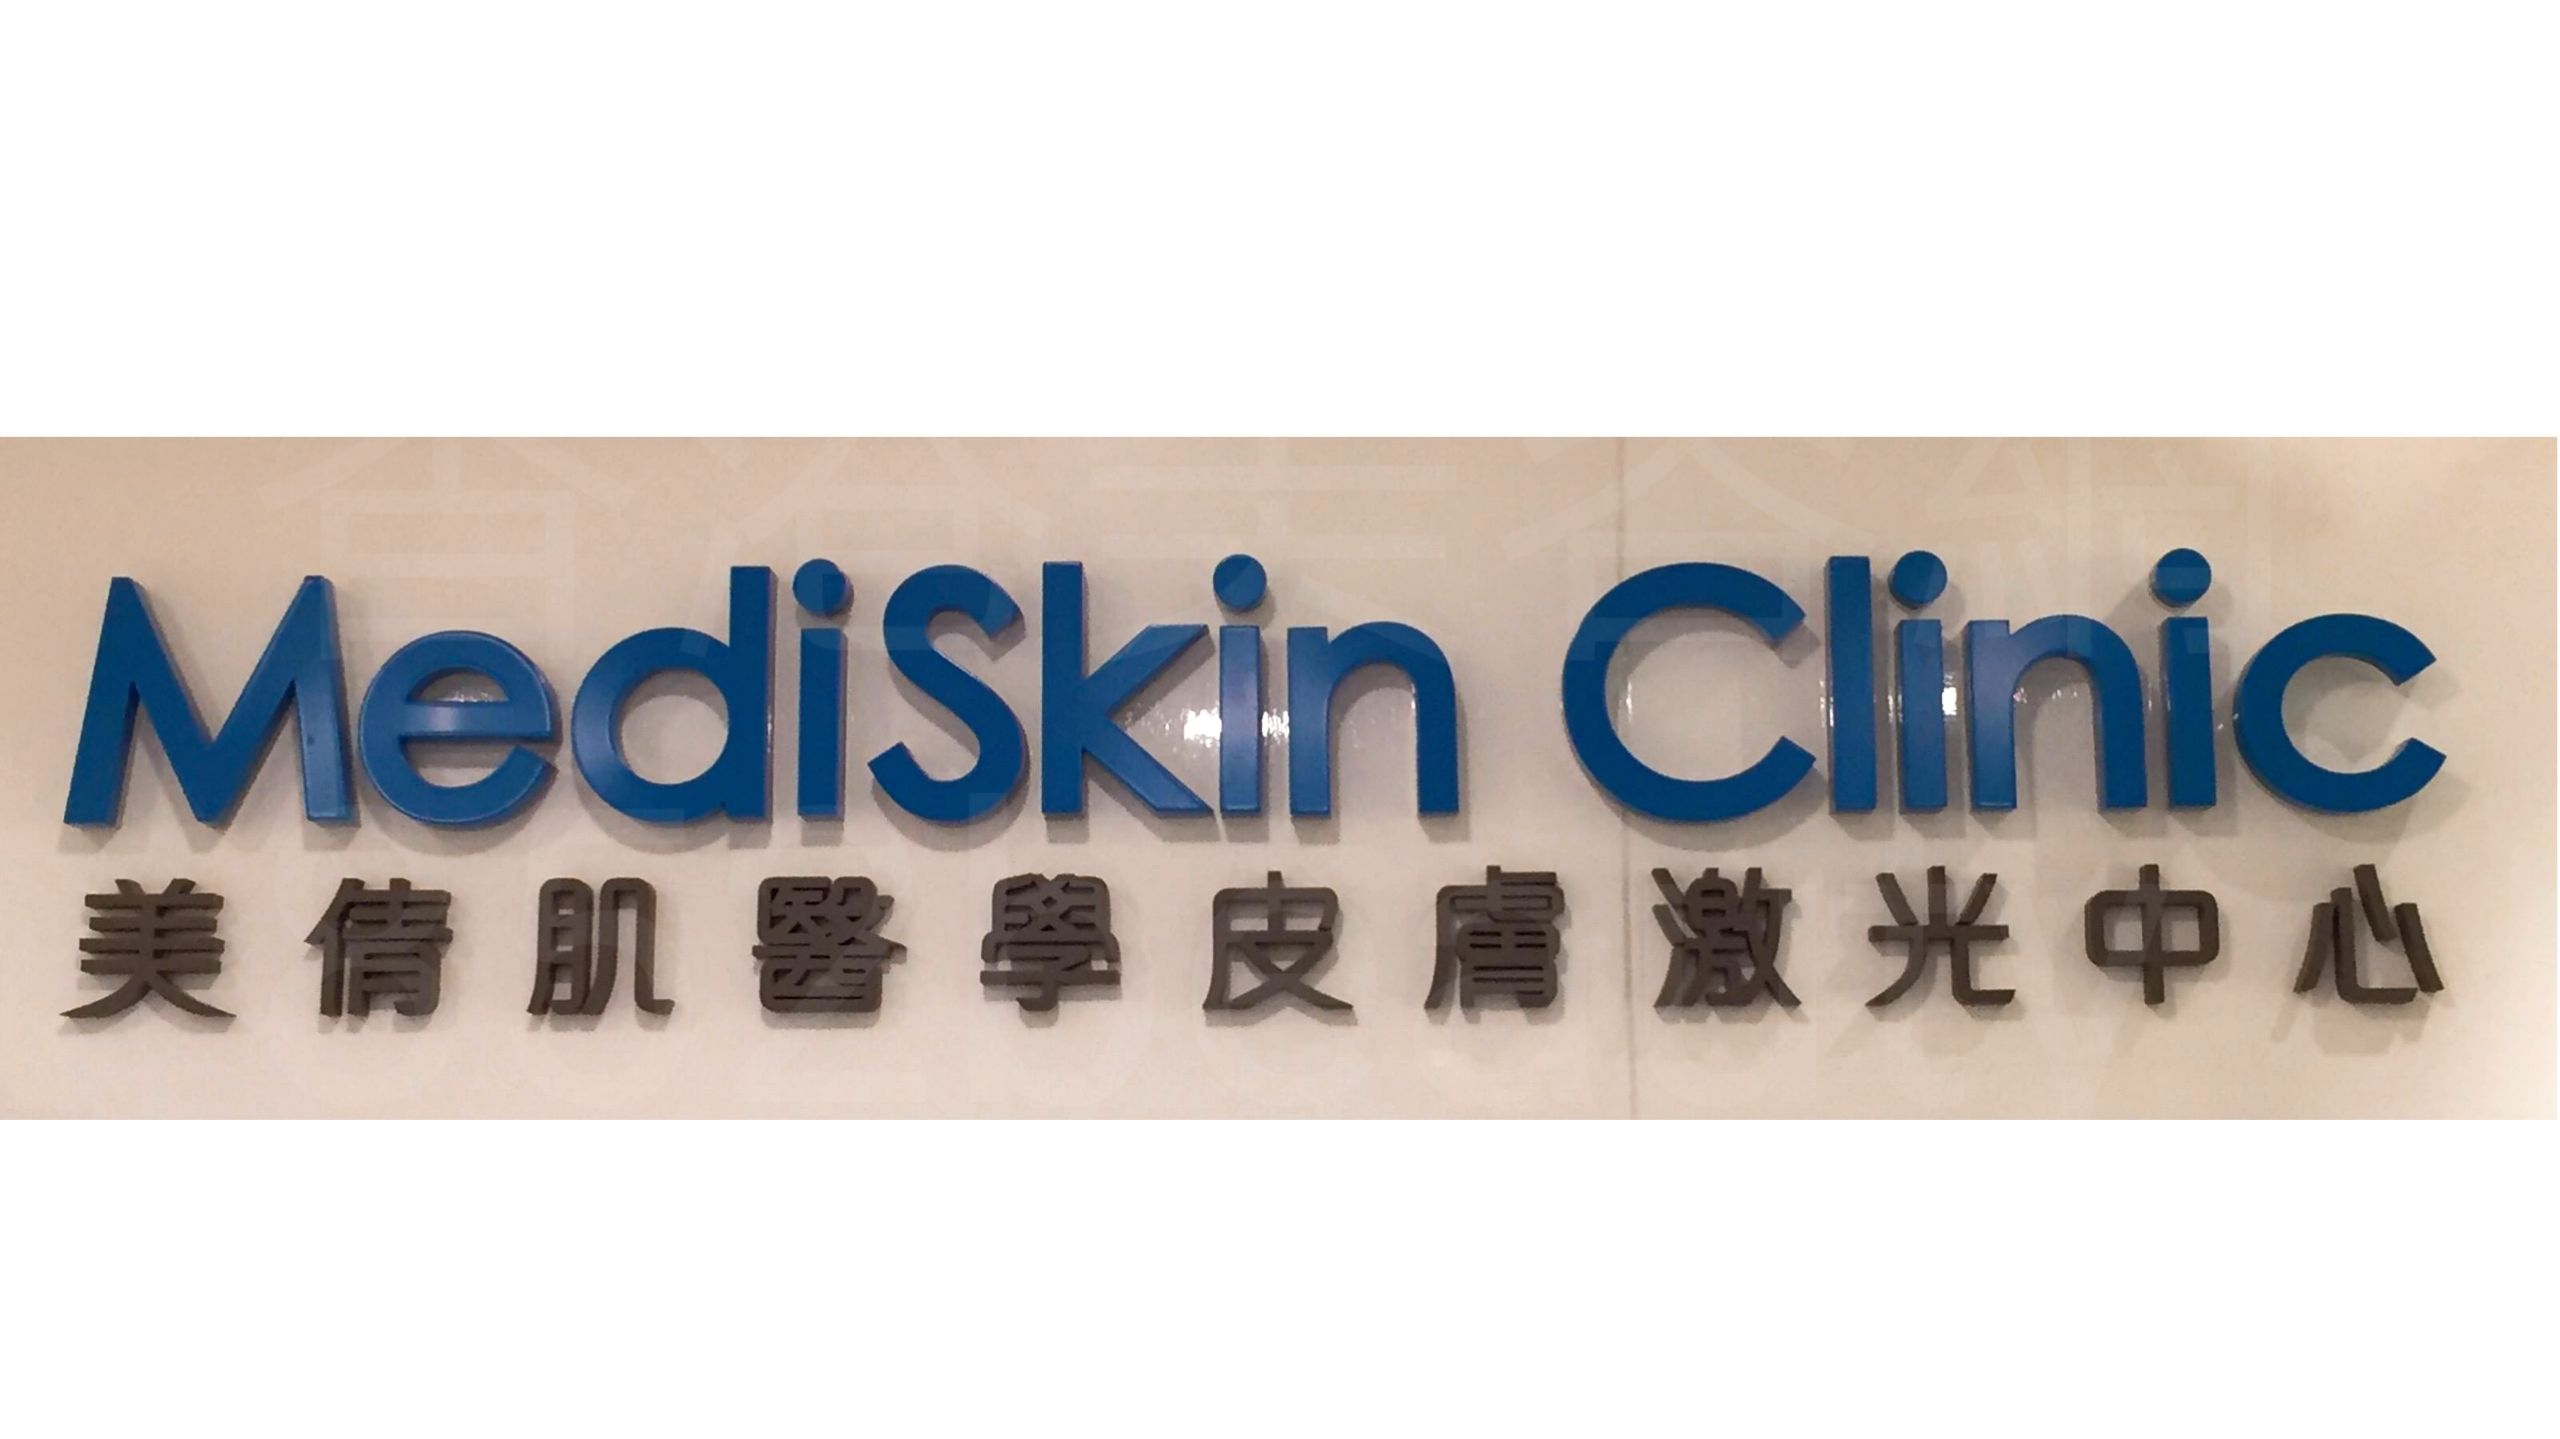 医学美容: MediSkin Clinic 美倩肌醫學皮膚激光中心